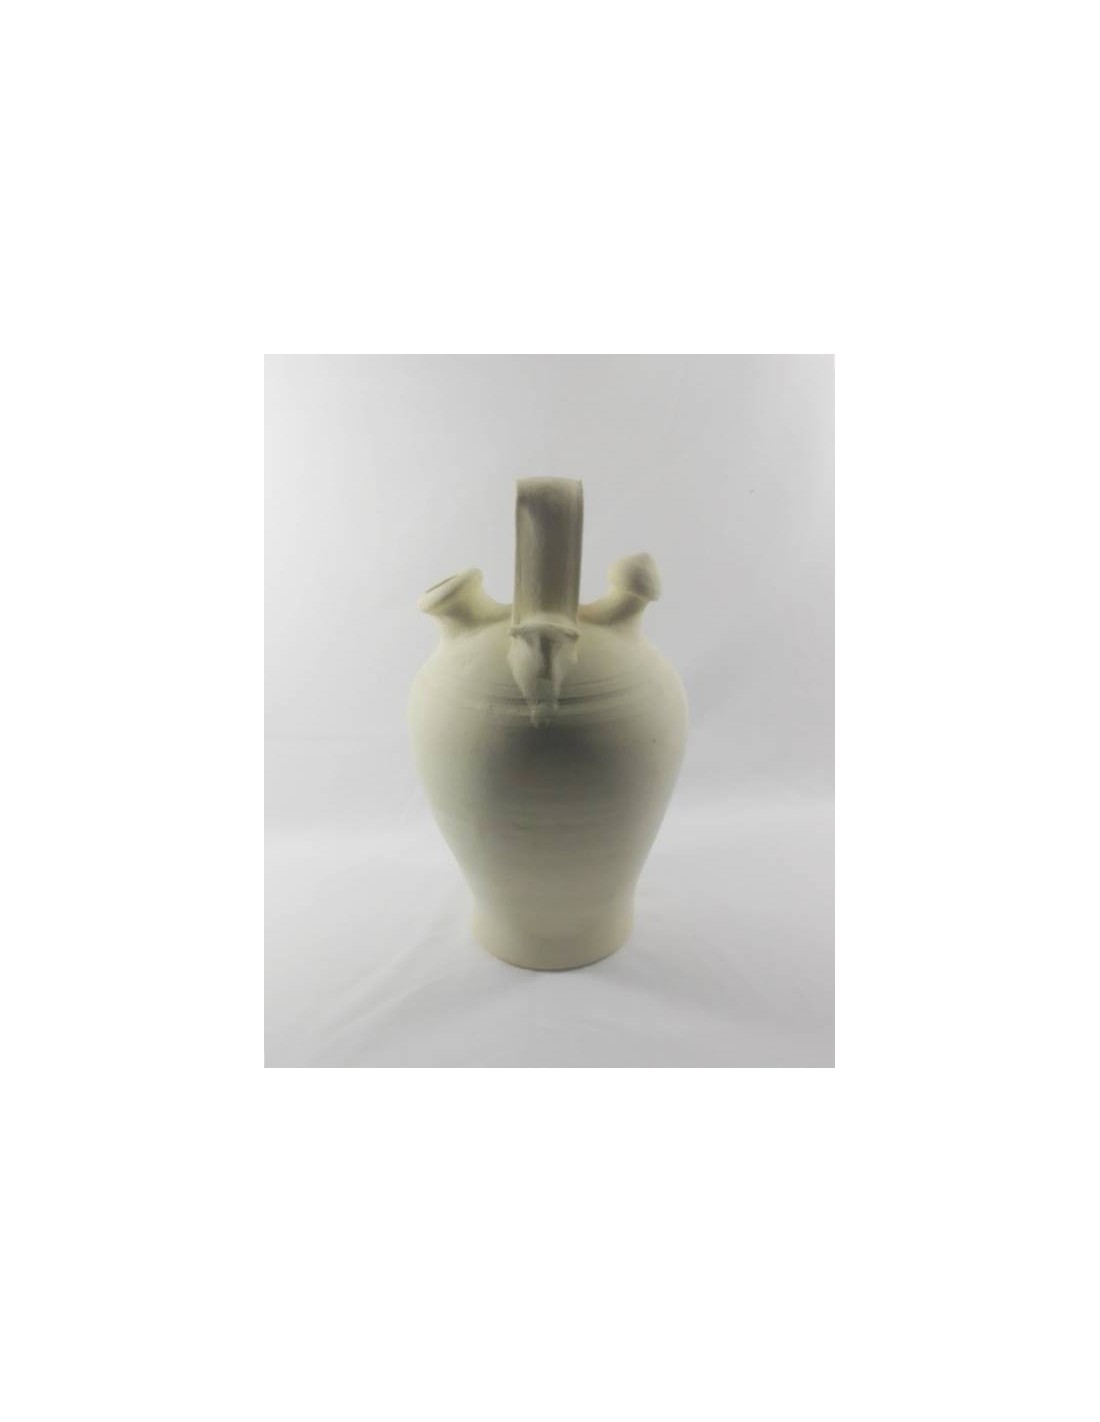 Venta de Botijos ecológicos – Botijos de barro y productos de cerámica  artesanal